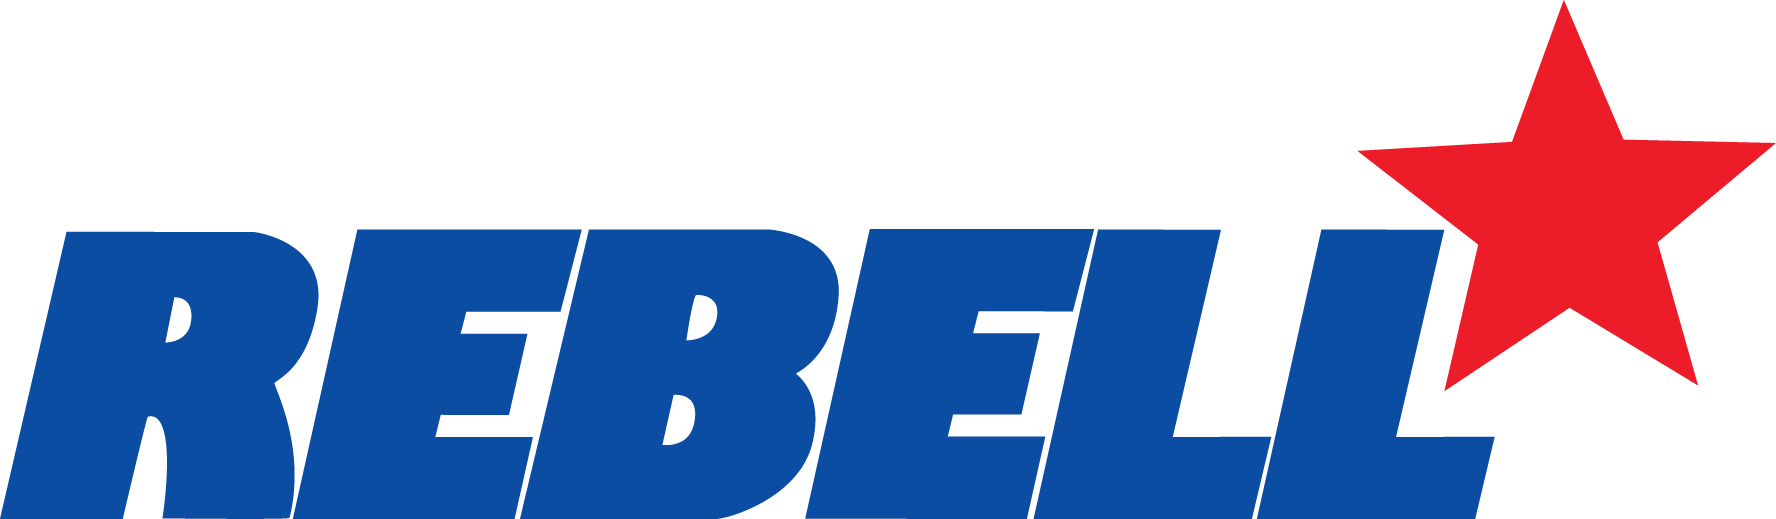 rebell_logo